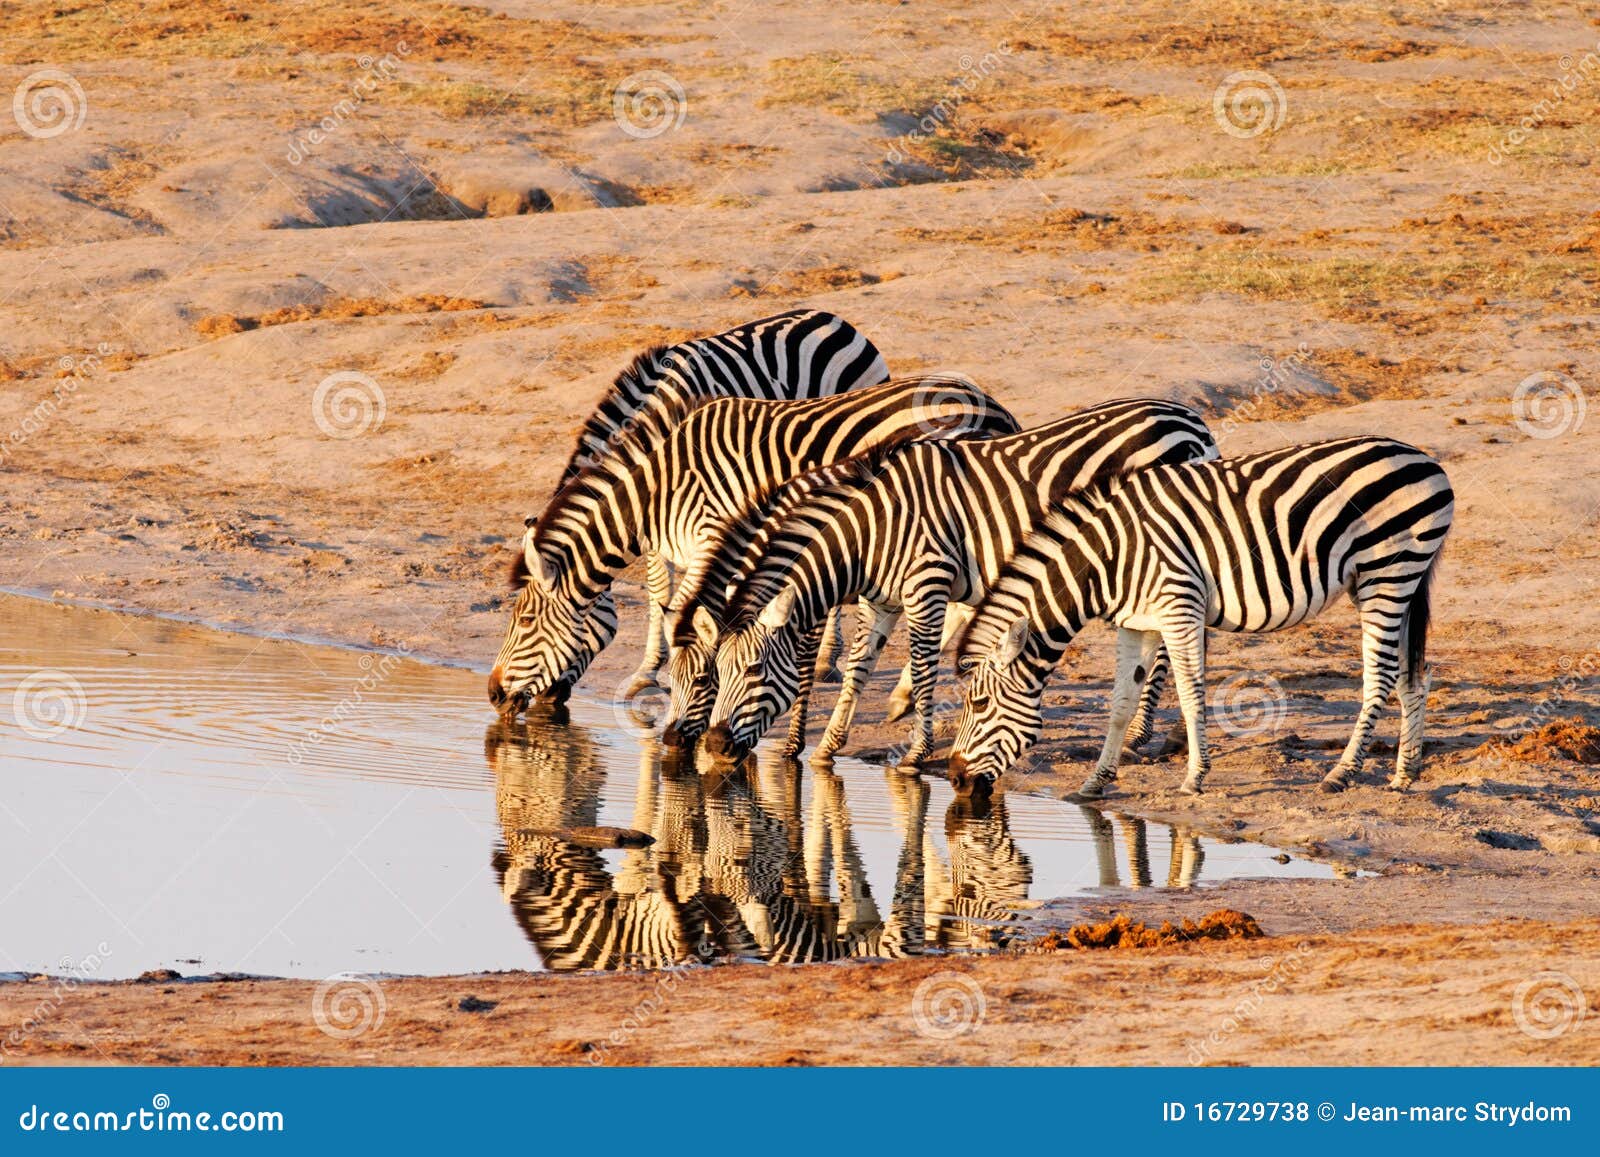 plains zebra (equus burchelii) drinking at nyamand